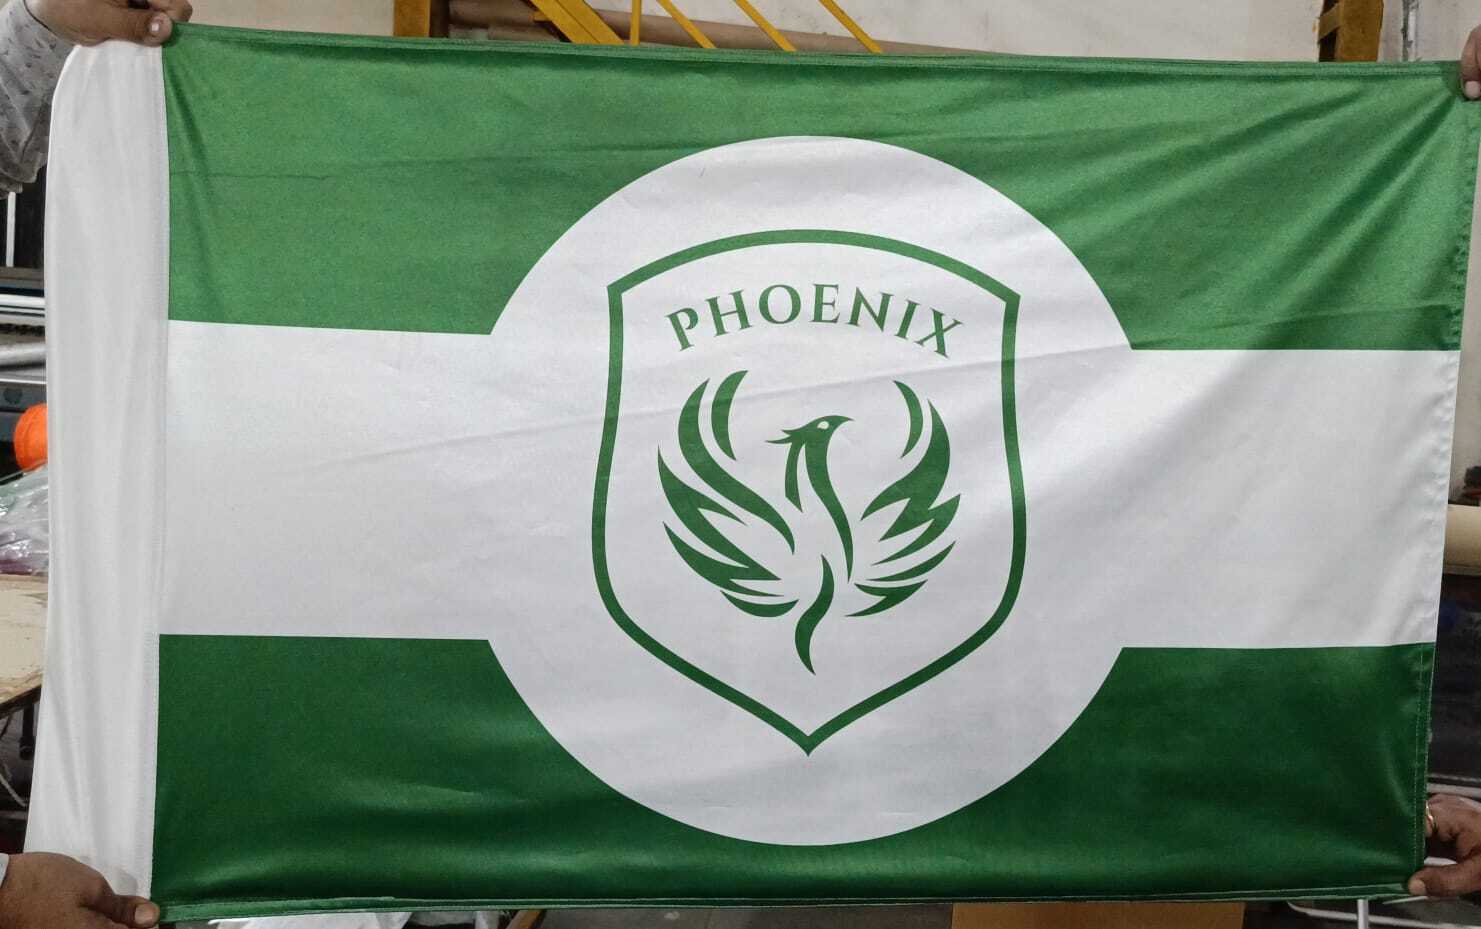 Printed School Flag